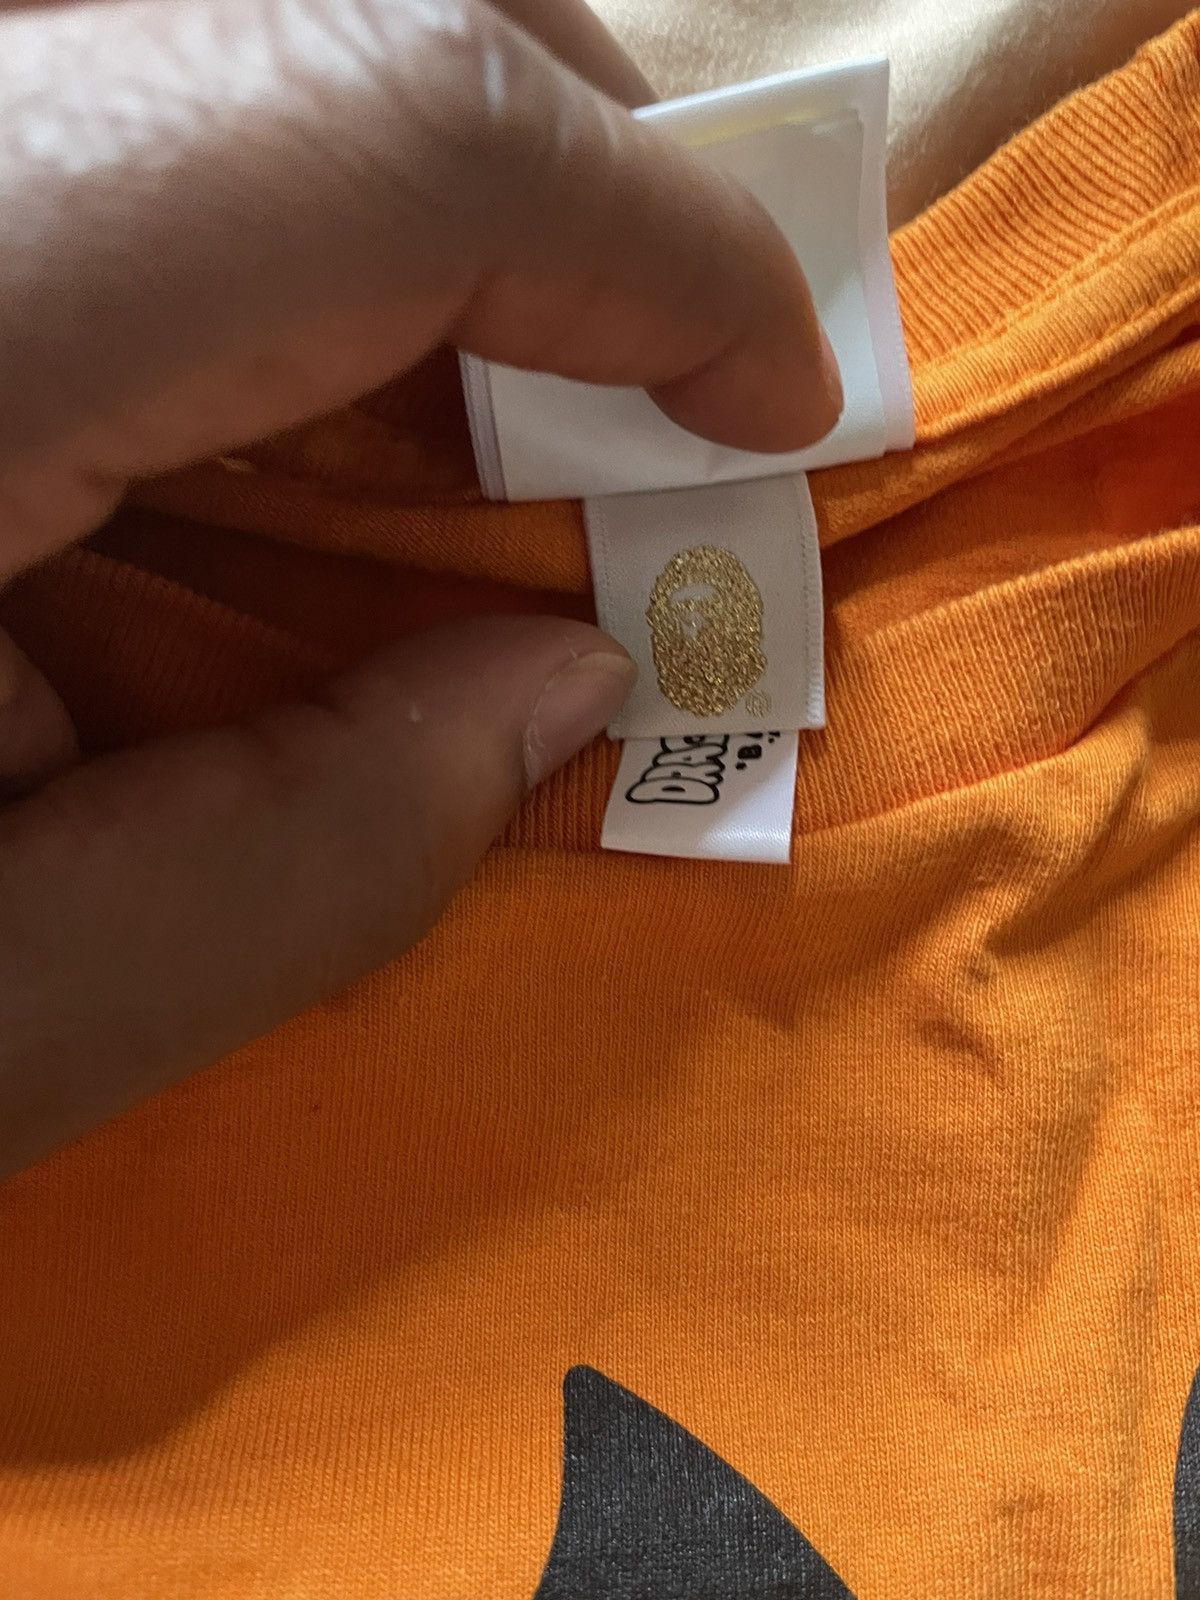 Bape Bape Dragon ball Z Vegeta Gohan Krillin Milo Orange T Shirt Size US L / EU 52-54 / 3 - 6 Thumbnail